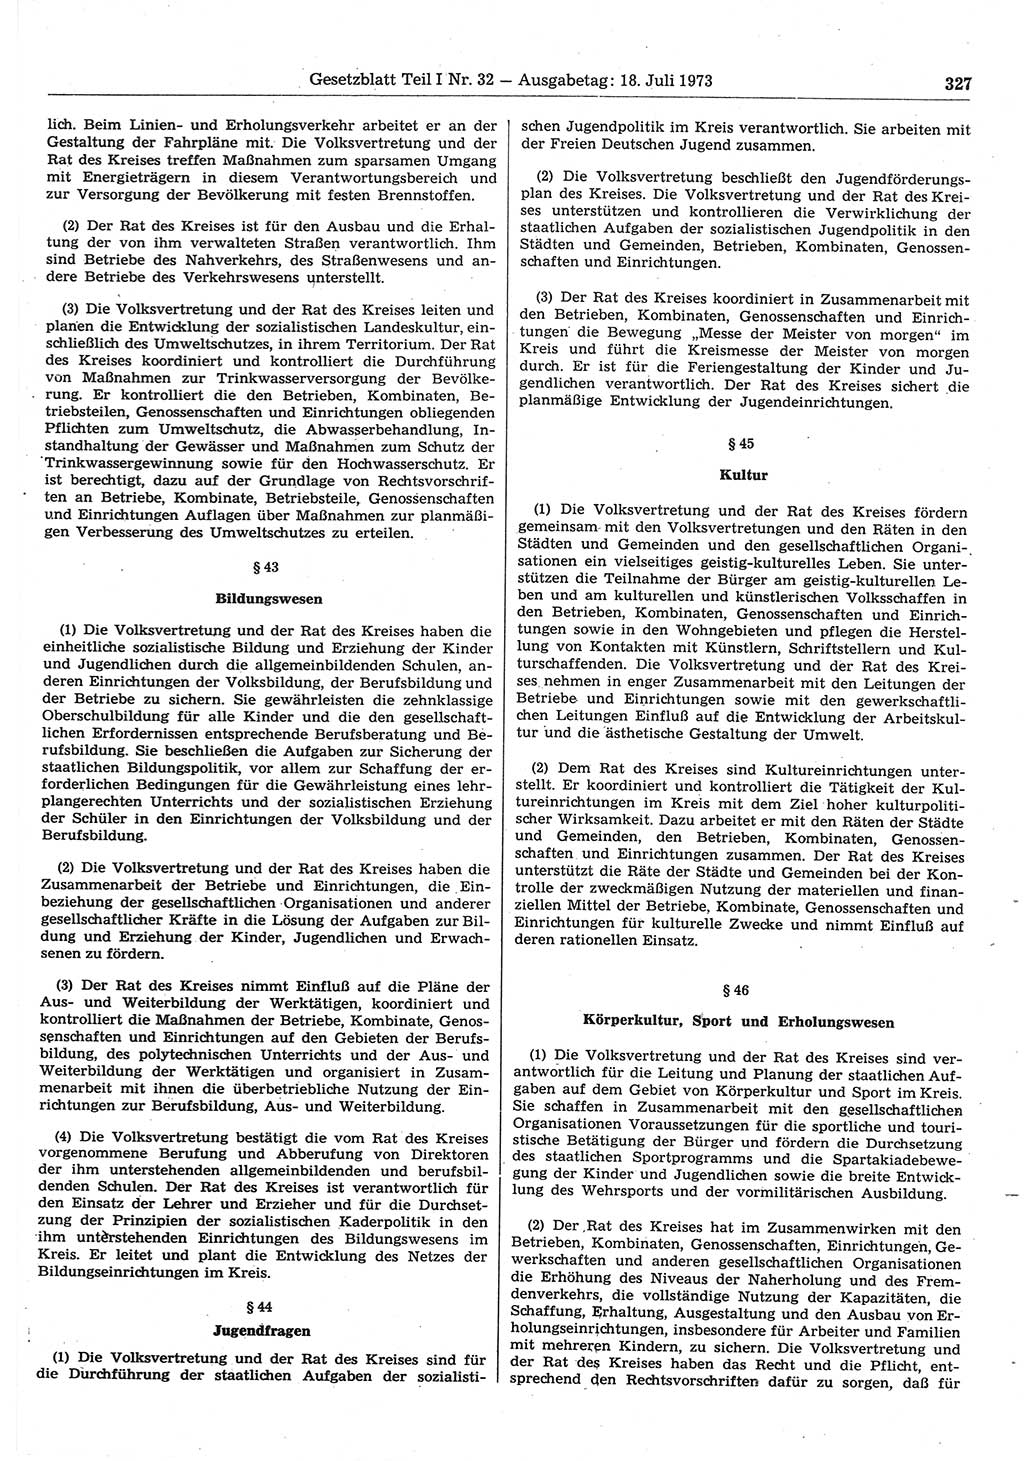 Gesetzblatt (GBl.) der Deutschen Demokratischen Republik (DDR) Teil Ⅰ 1973, Seite 327 (GBl. DDR Ⅰ 1973, S. 327)